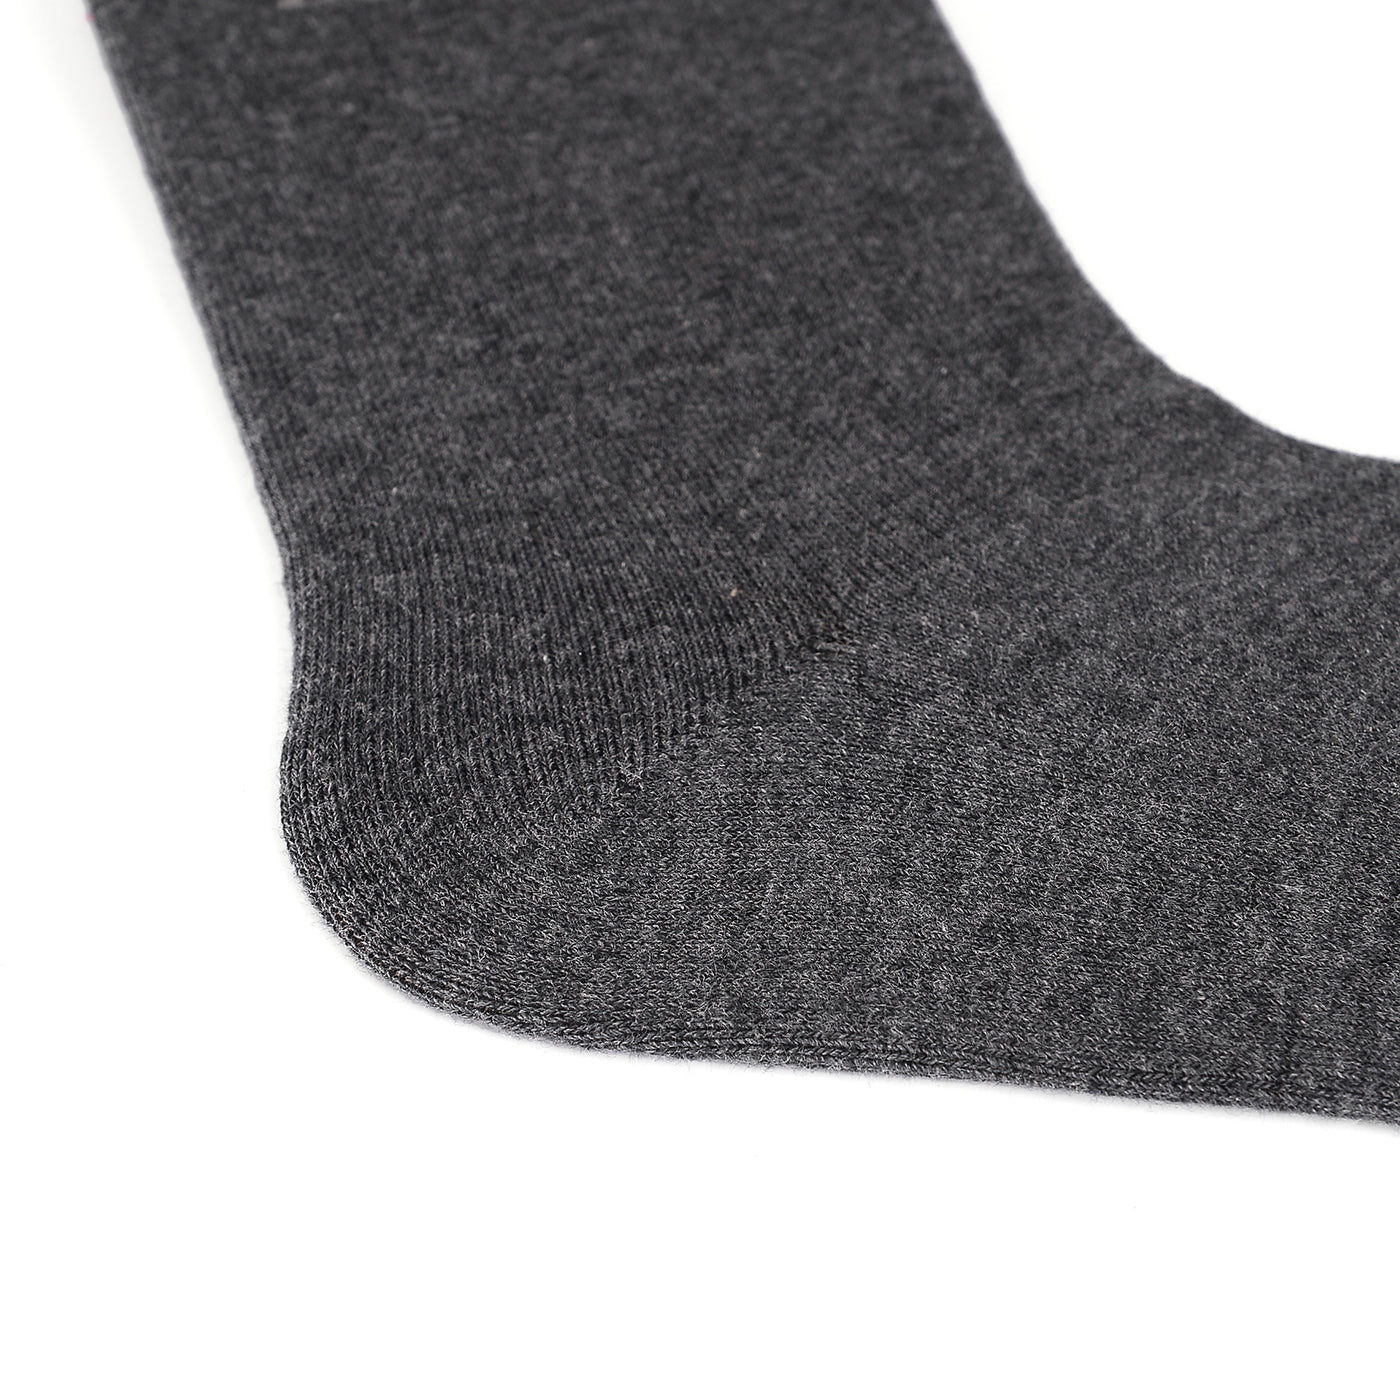 4 pares de calcetines de negocios con punta lisa y sin costuras de algodón peinado de la mejor calidad, gris oscuro / antracita, set de regalo 